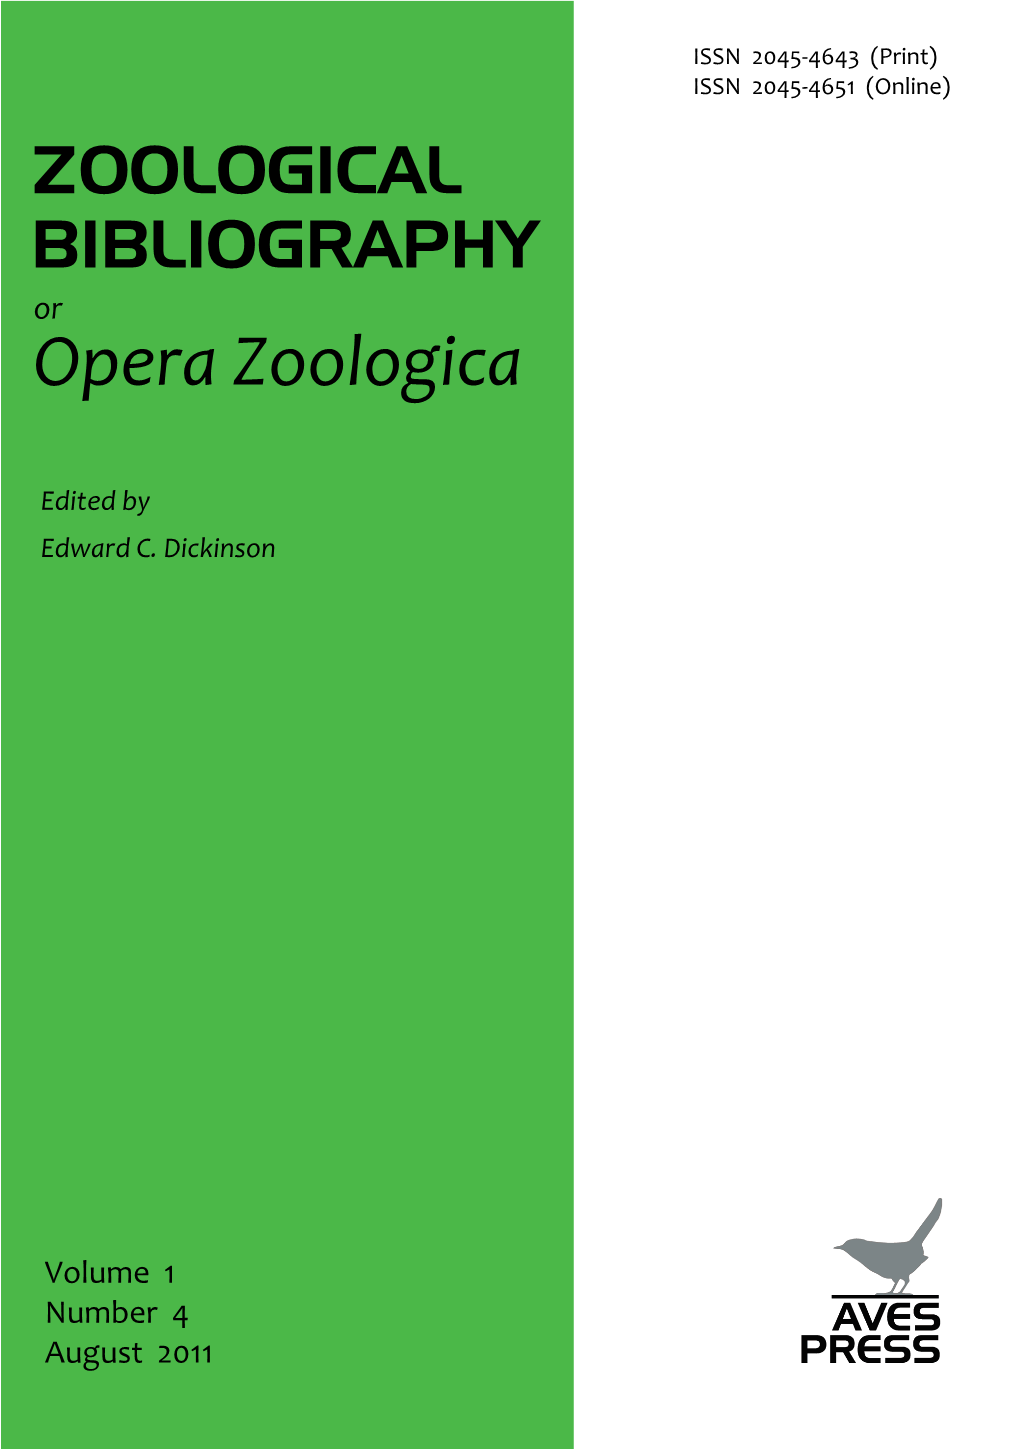 Opera Zoologica